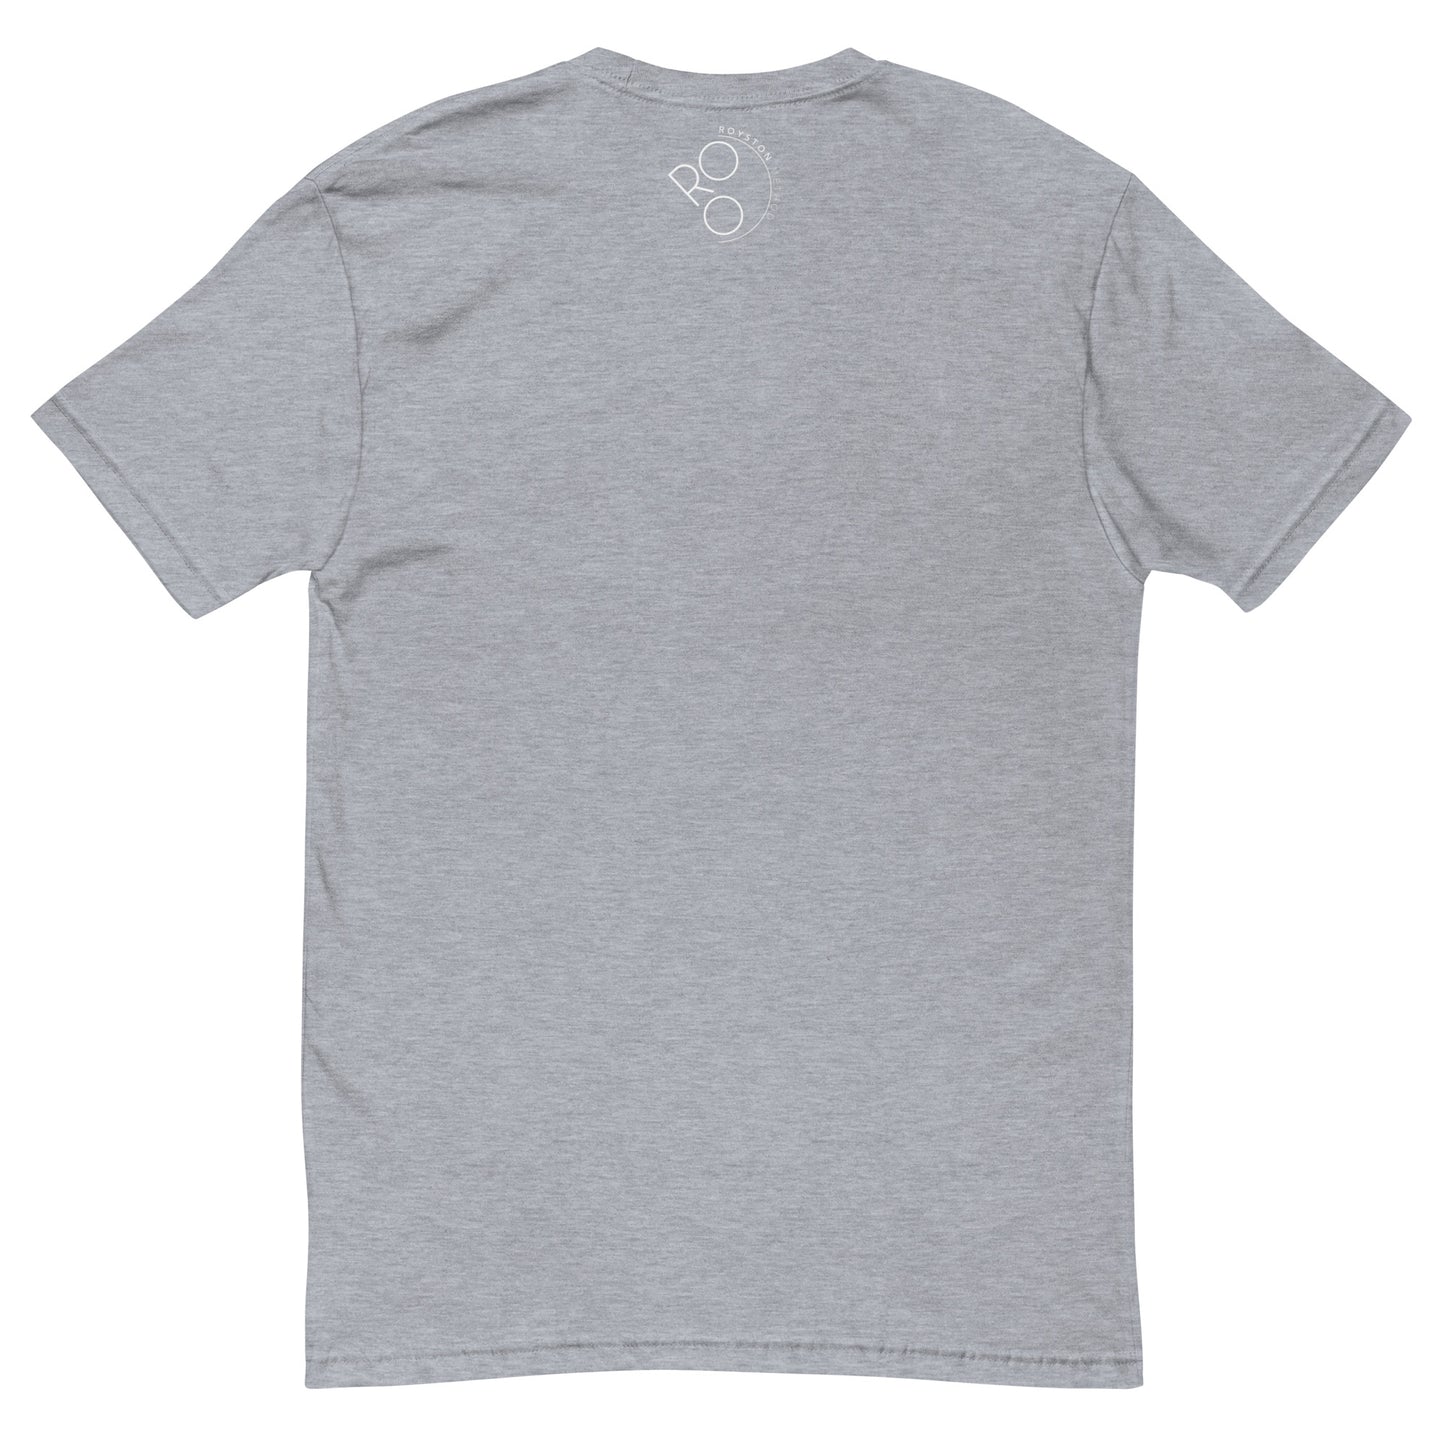 Fittest Over 50 Men's Short Sleeve T-shirt